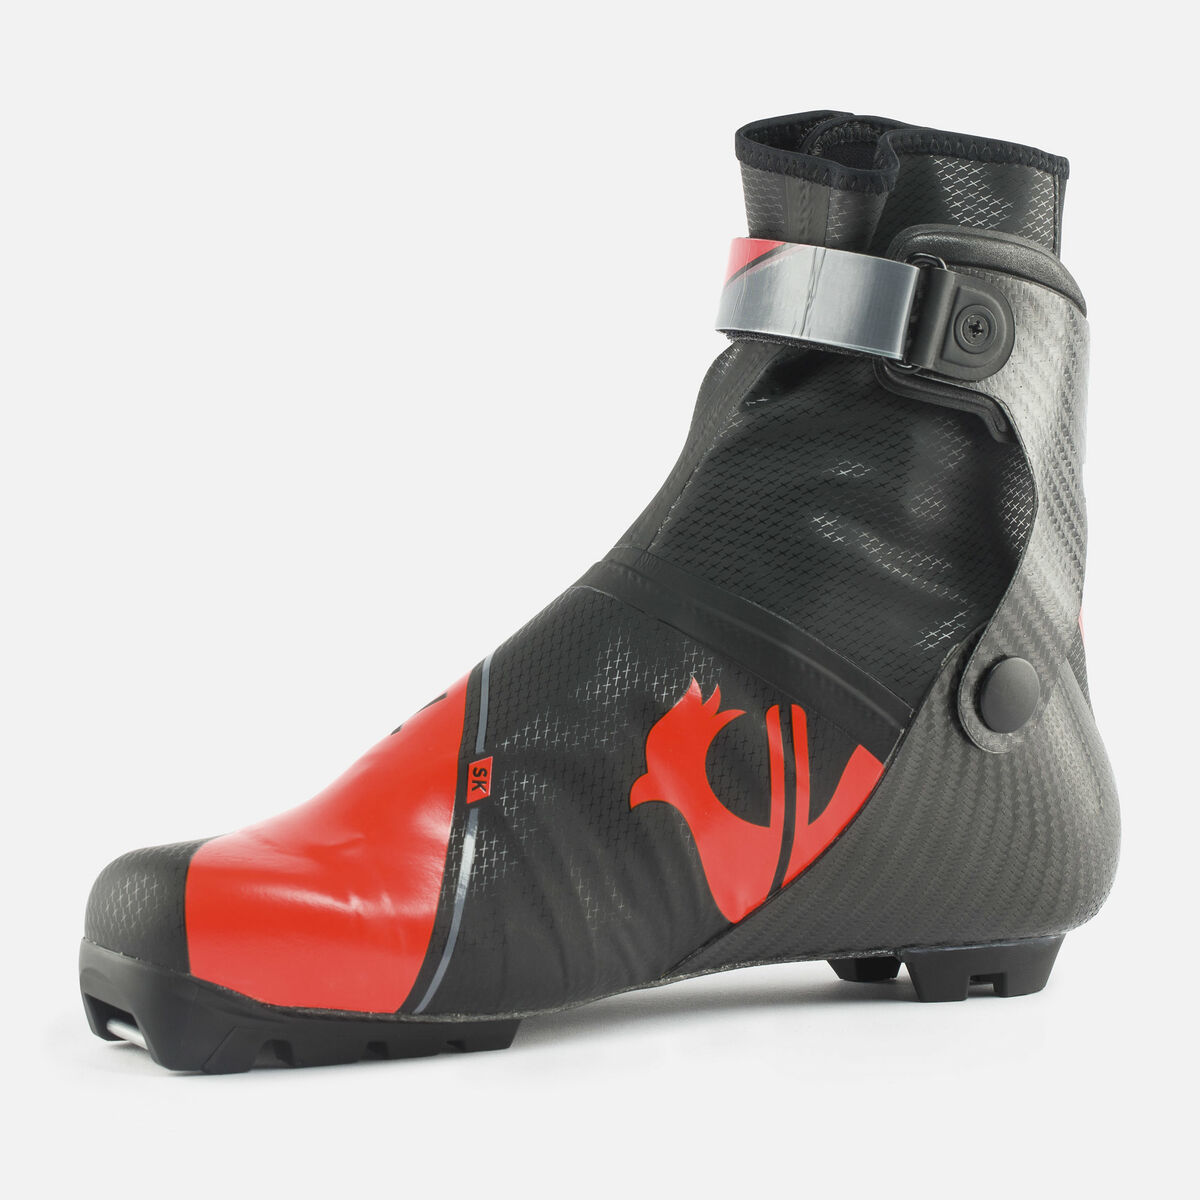 Chaussures de ski nordique Unisexee X-IUM CARBON PREMIUM SKATE